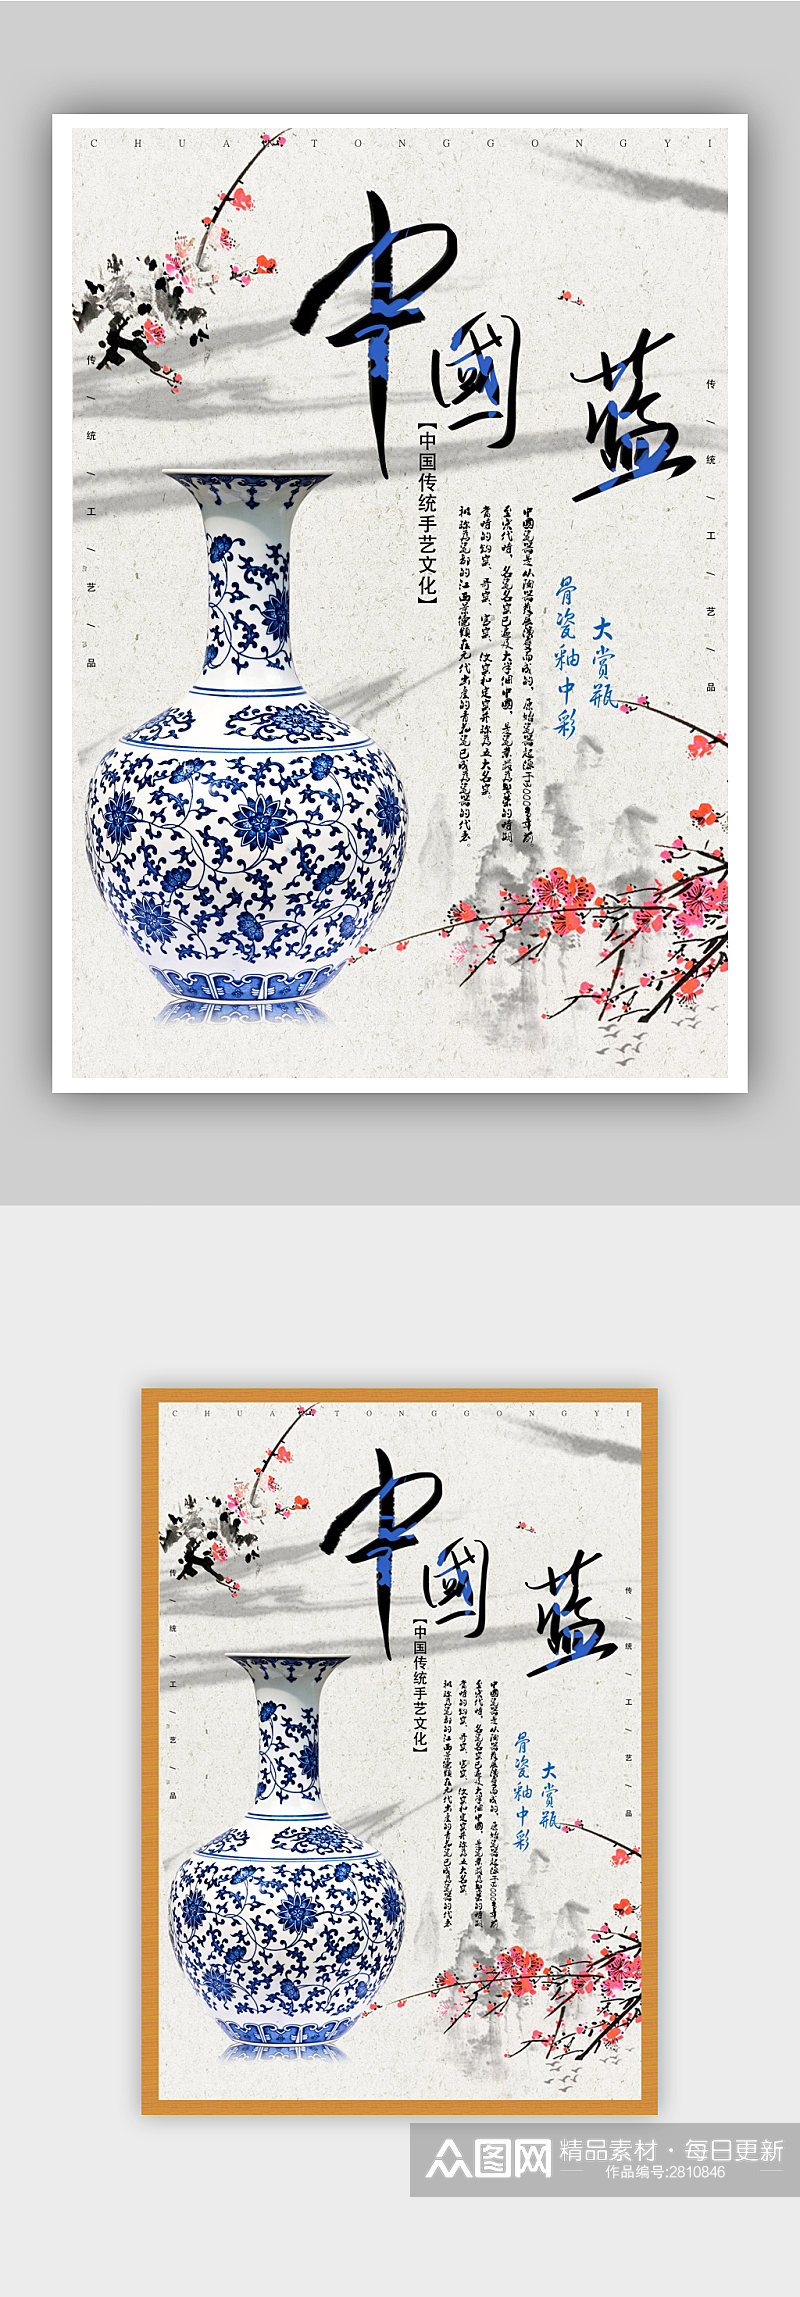 中国风传统手艺工艺品宣传海报素材